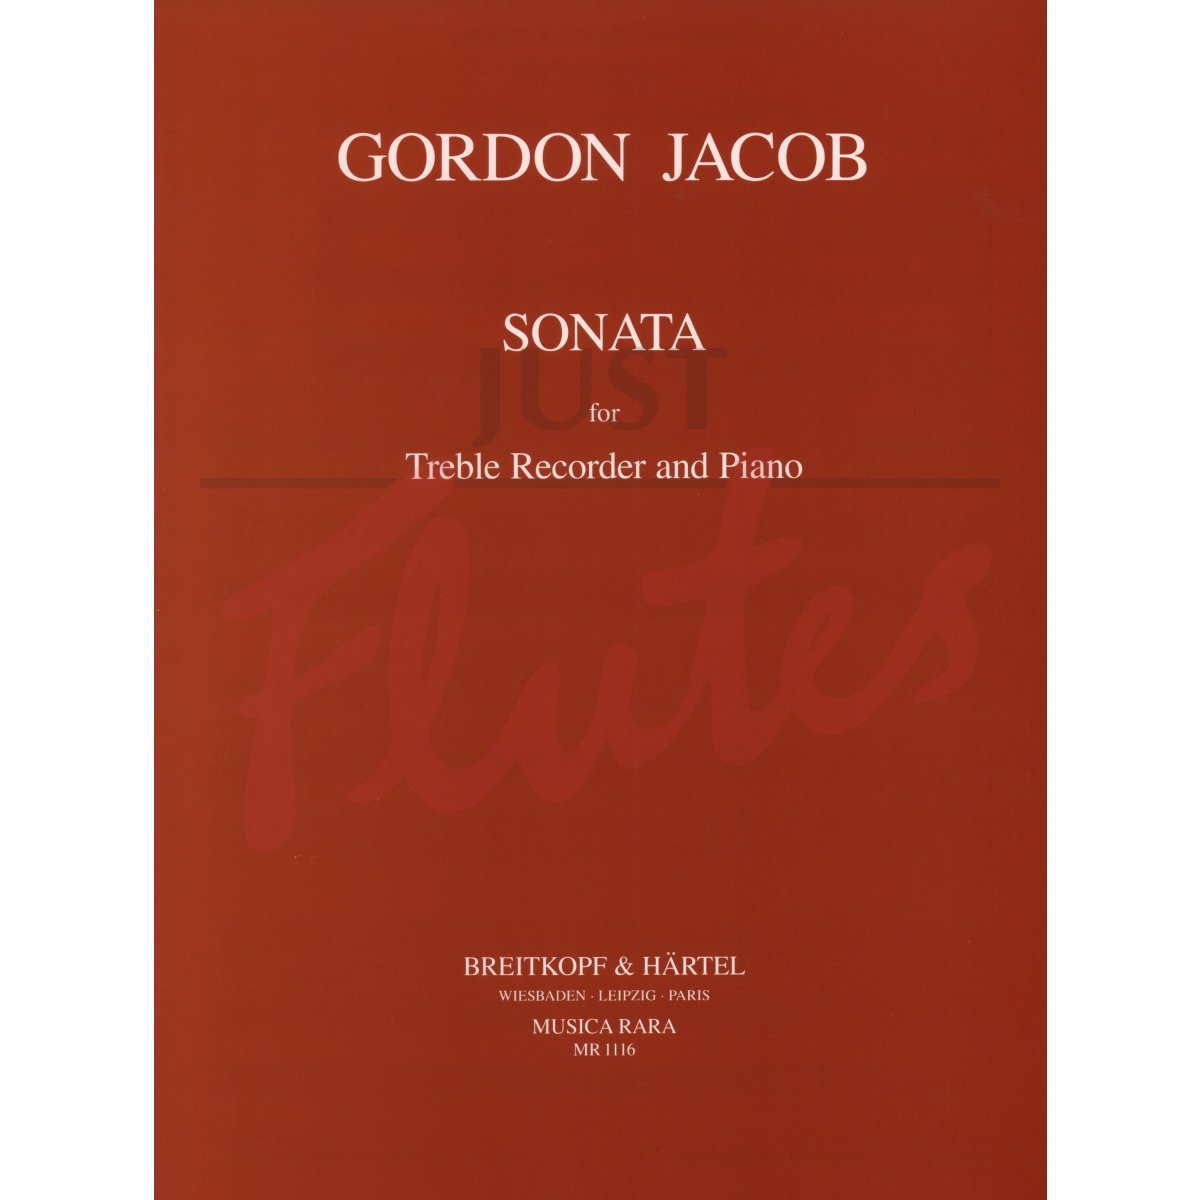 Sonata for Flute/Treble Recorder and Piano